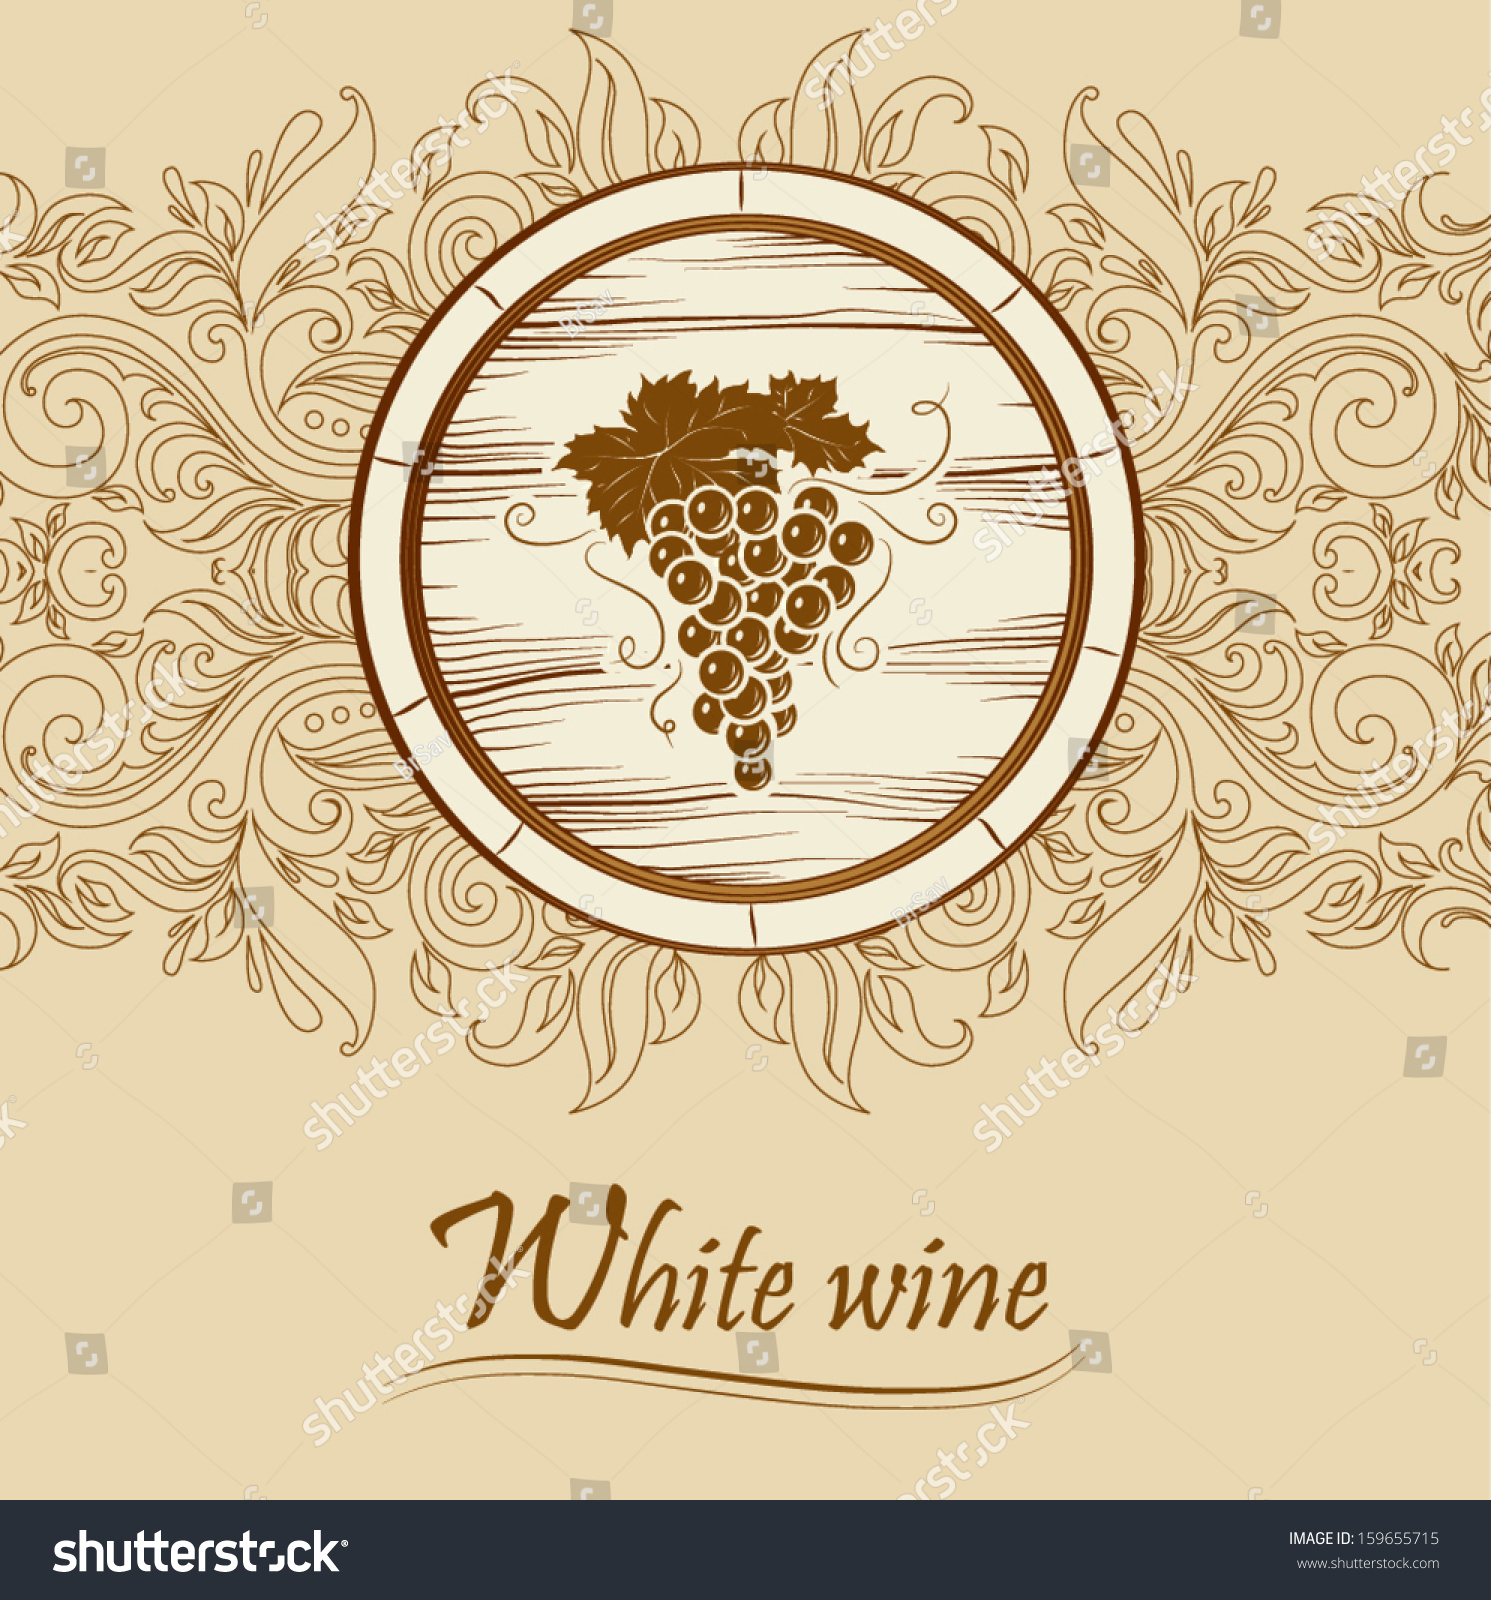 clip art wine labels - photo #18